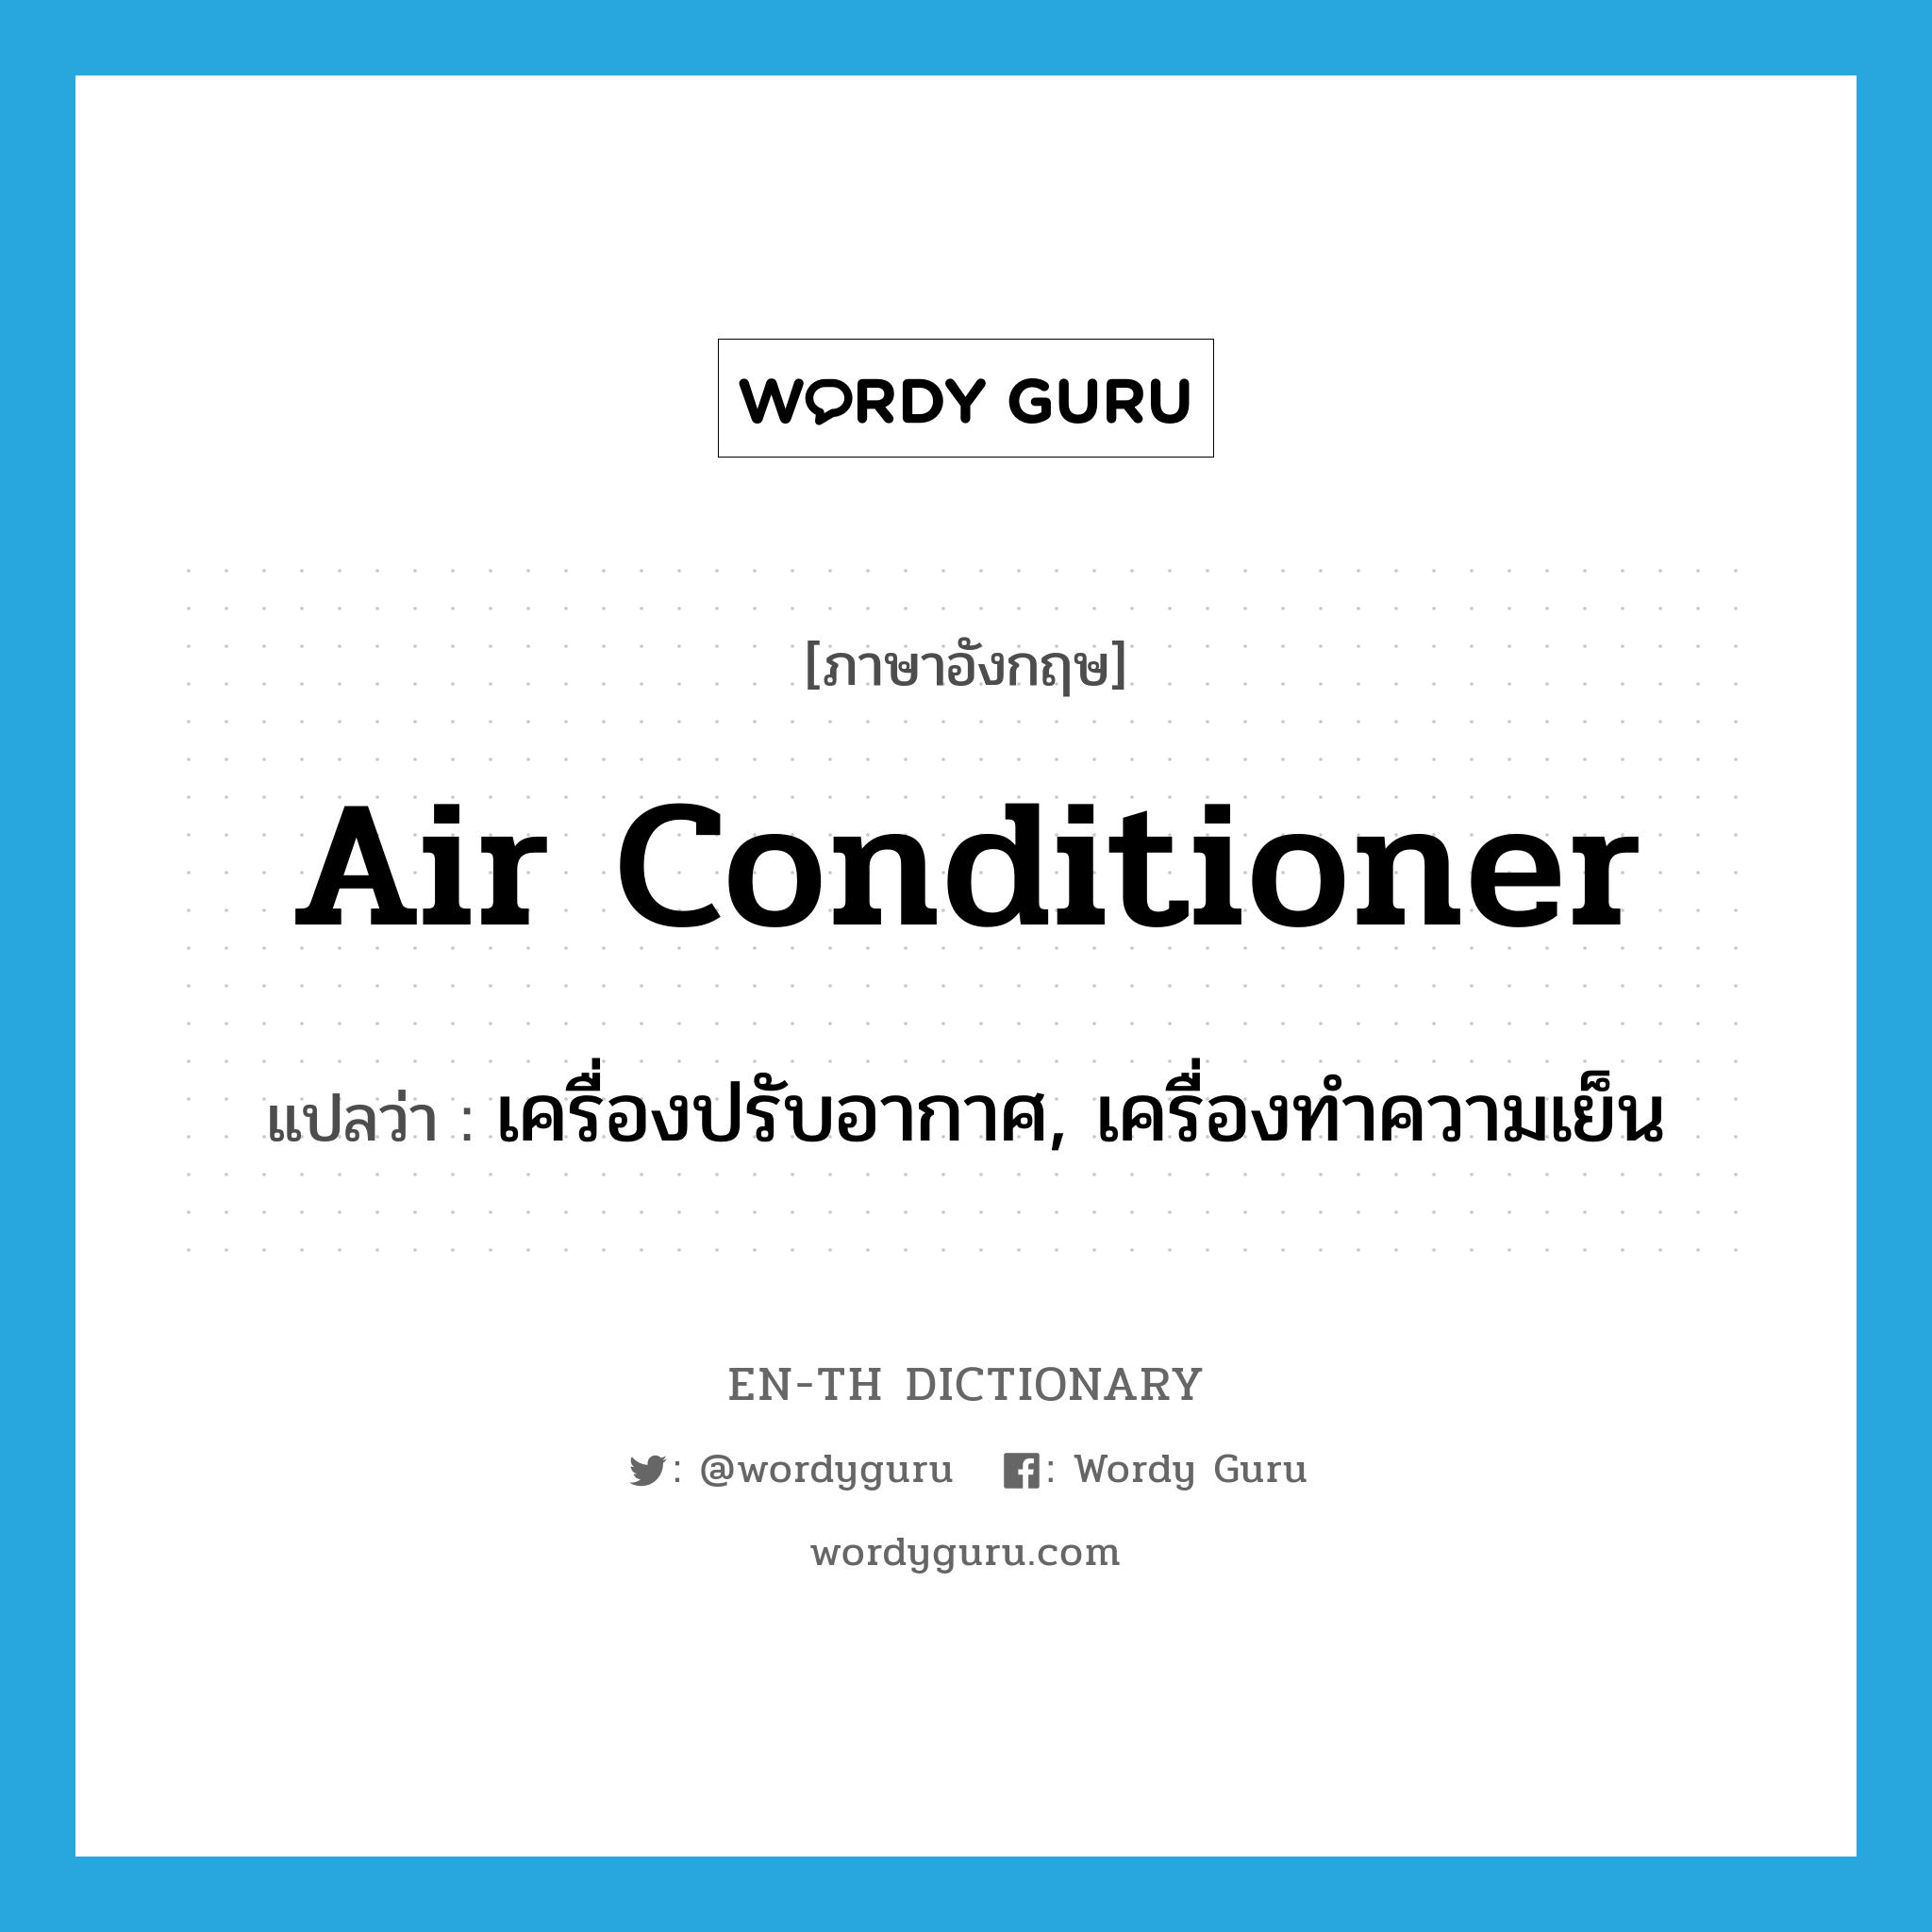 เครื่องปรับอากาศ, เครื่องทำความเย็น ภาษาอังกฤษ?, คำศัพท์ภาษาอังกฤษ เครื่องปรับอากาศ, เครื่องทำความเย็น แปลว่า air conditioner ประเภท N หมวด N